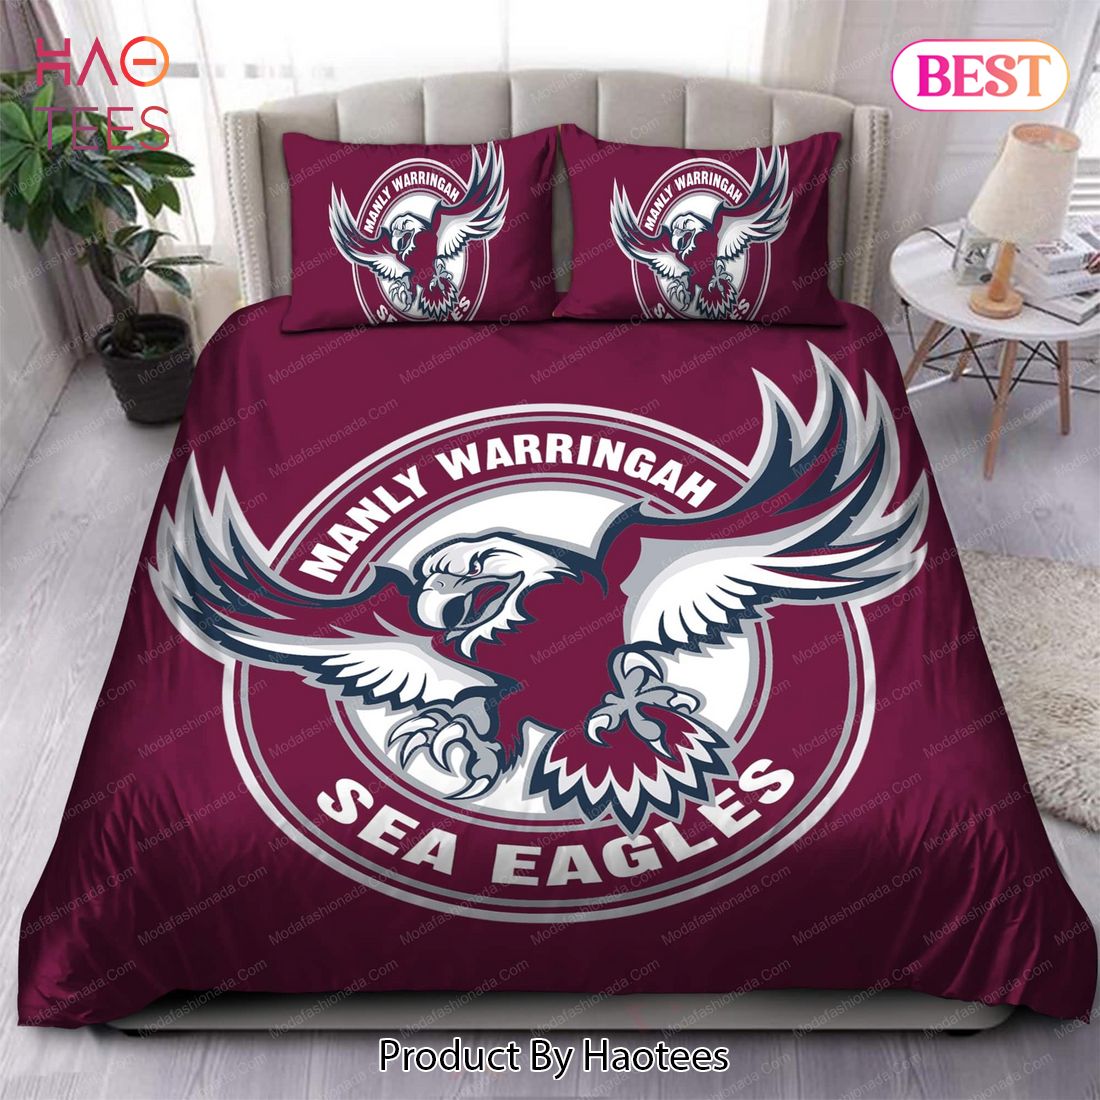 Buy Manly Warringah Sea Eagles Logo Bedding Sets Bed Sets, Bedroom Sets, Comforter Sets, Duvet Cover, Bedspread